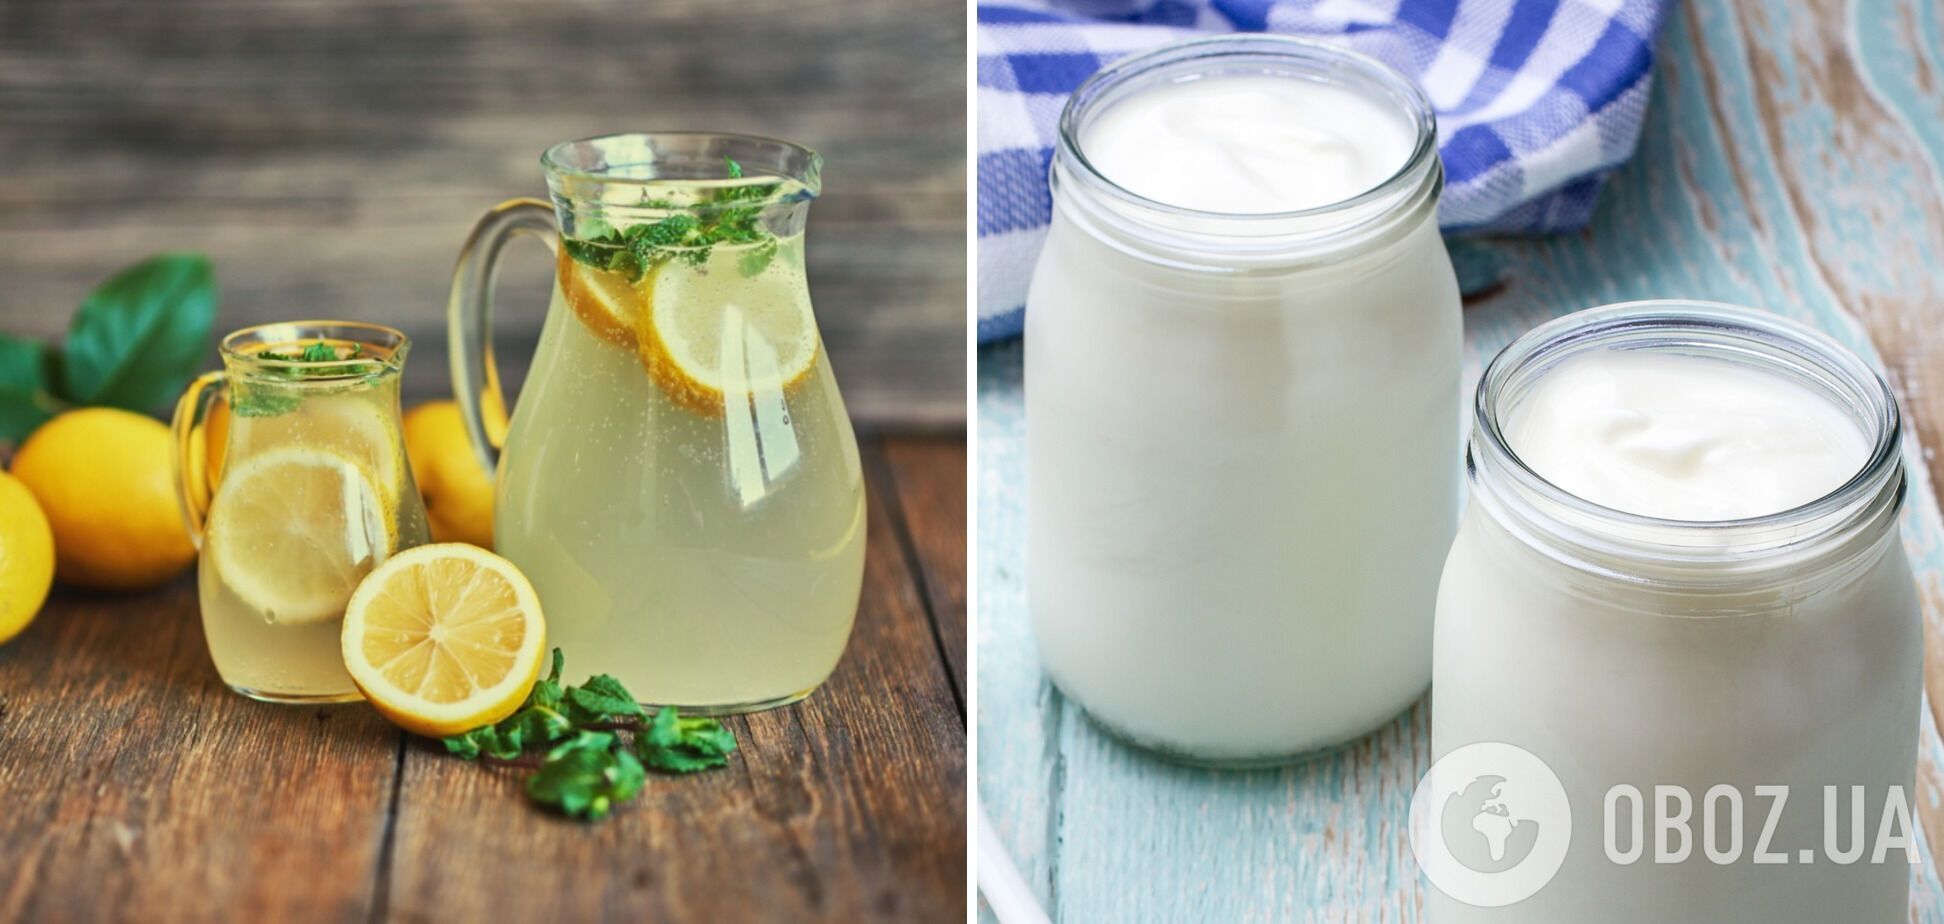 Лимонад та молоко викликають порушення обміну речовин та проблеми з кишківником